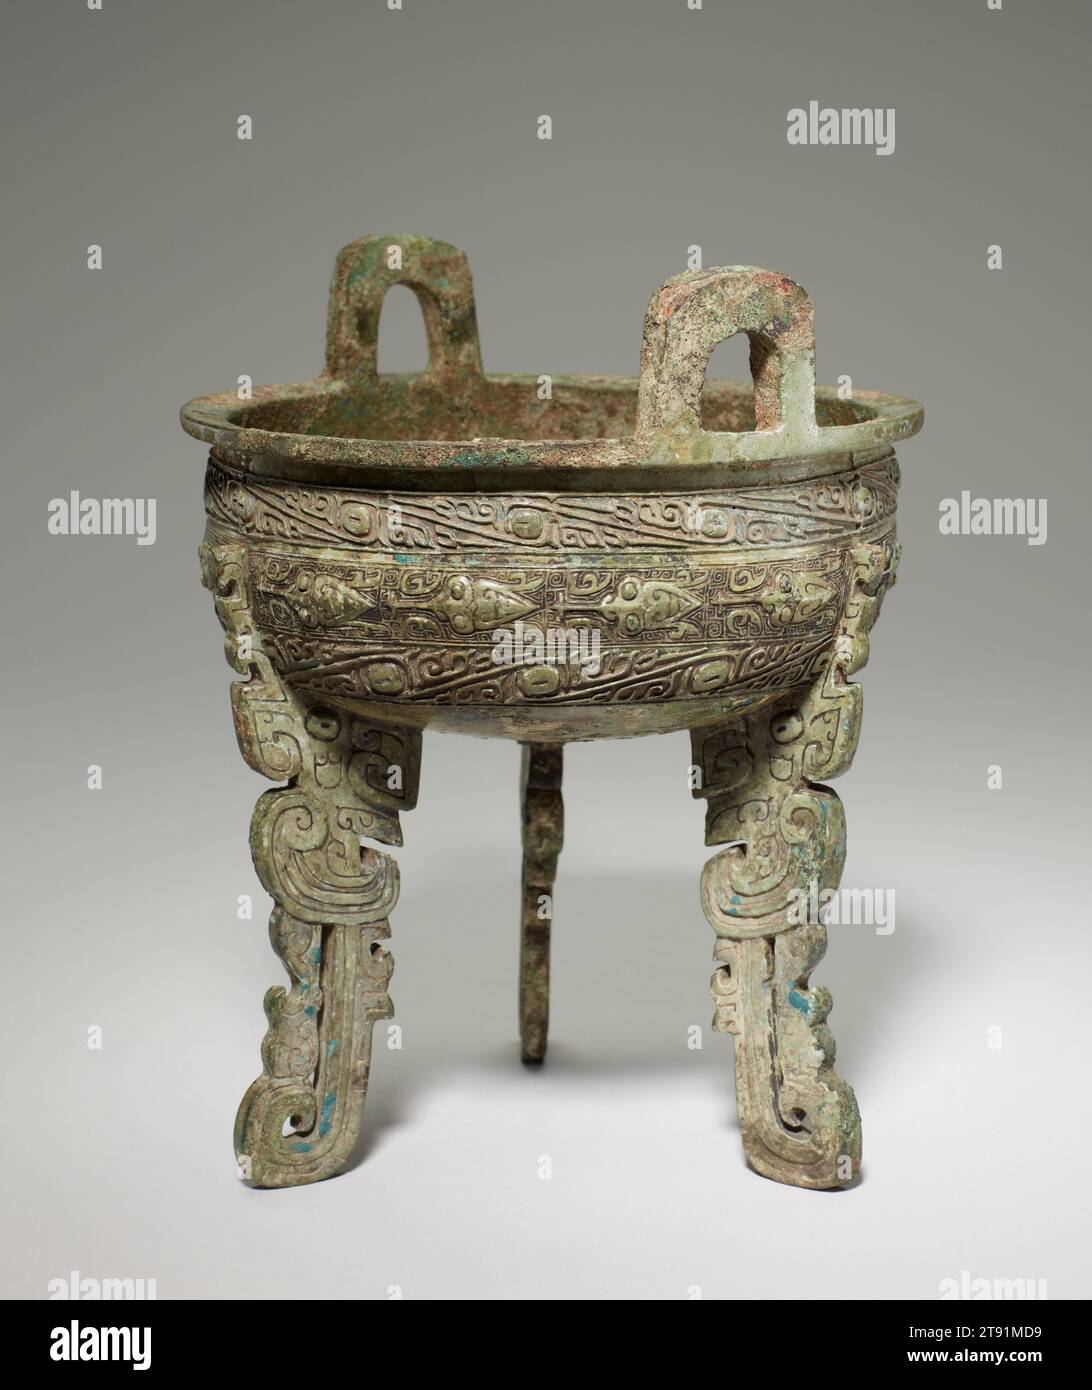 Recipiente alimentare Ding, XI-X secolo a.C., 7 11/16 x 6 1/4 x 6 5/16 pollici, 3,1 libbre (19,5 x 15,8 x 16 cm, 1,4 kg), Bronzo, Cina, XI-X secolo a.C., come per molti altri tipi di vasi in bronzo, il ding aveva un prototipo di ceramica risalente già alla cultura Peiligang del periodo neolitico (7000–5000 a.C. circa). Le versioni in bronzo del ding a zampe piatte cominciarono ad essere fuse all'inizio della dinastia Shang (1600–1300 a.C. circa). Le gambe piatte di quelle Shang ding erano per lo più a forma di draghi stilizzati. All'inizio del periodo Zhou occidentale (1046–977 a.C. circa), divenne popolare per le zampe di ding prendere la forma Foto Stock